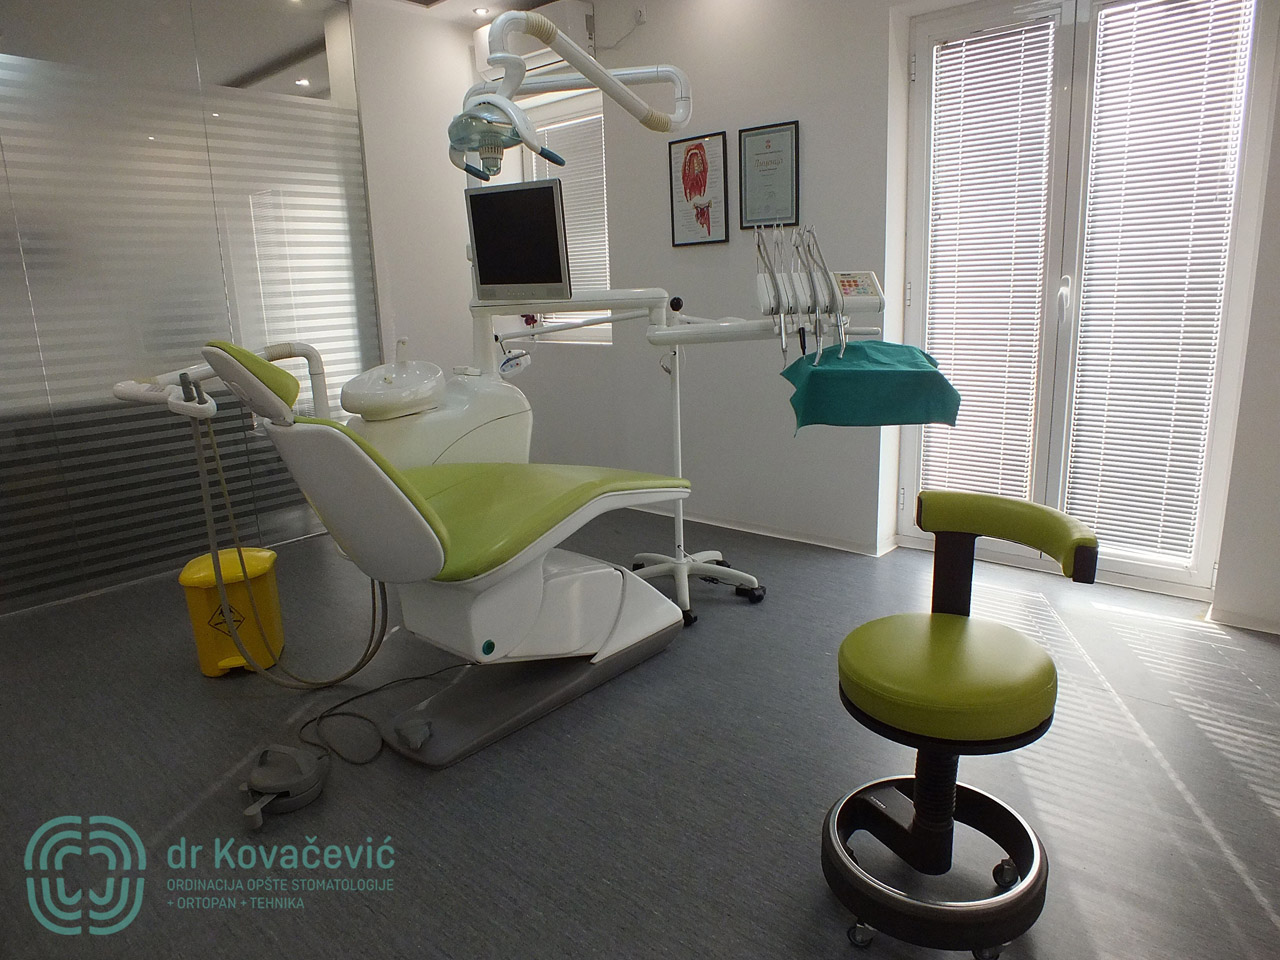 DENTAL CLINIC AND X-RAY CENTER DR KOVACEVIC Dental surgery Belgrade - Photo 1